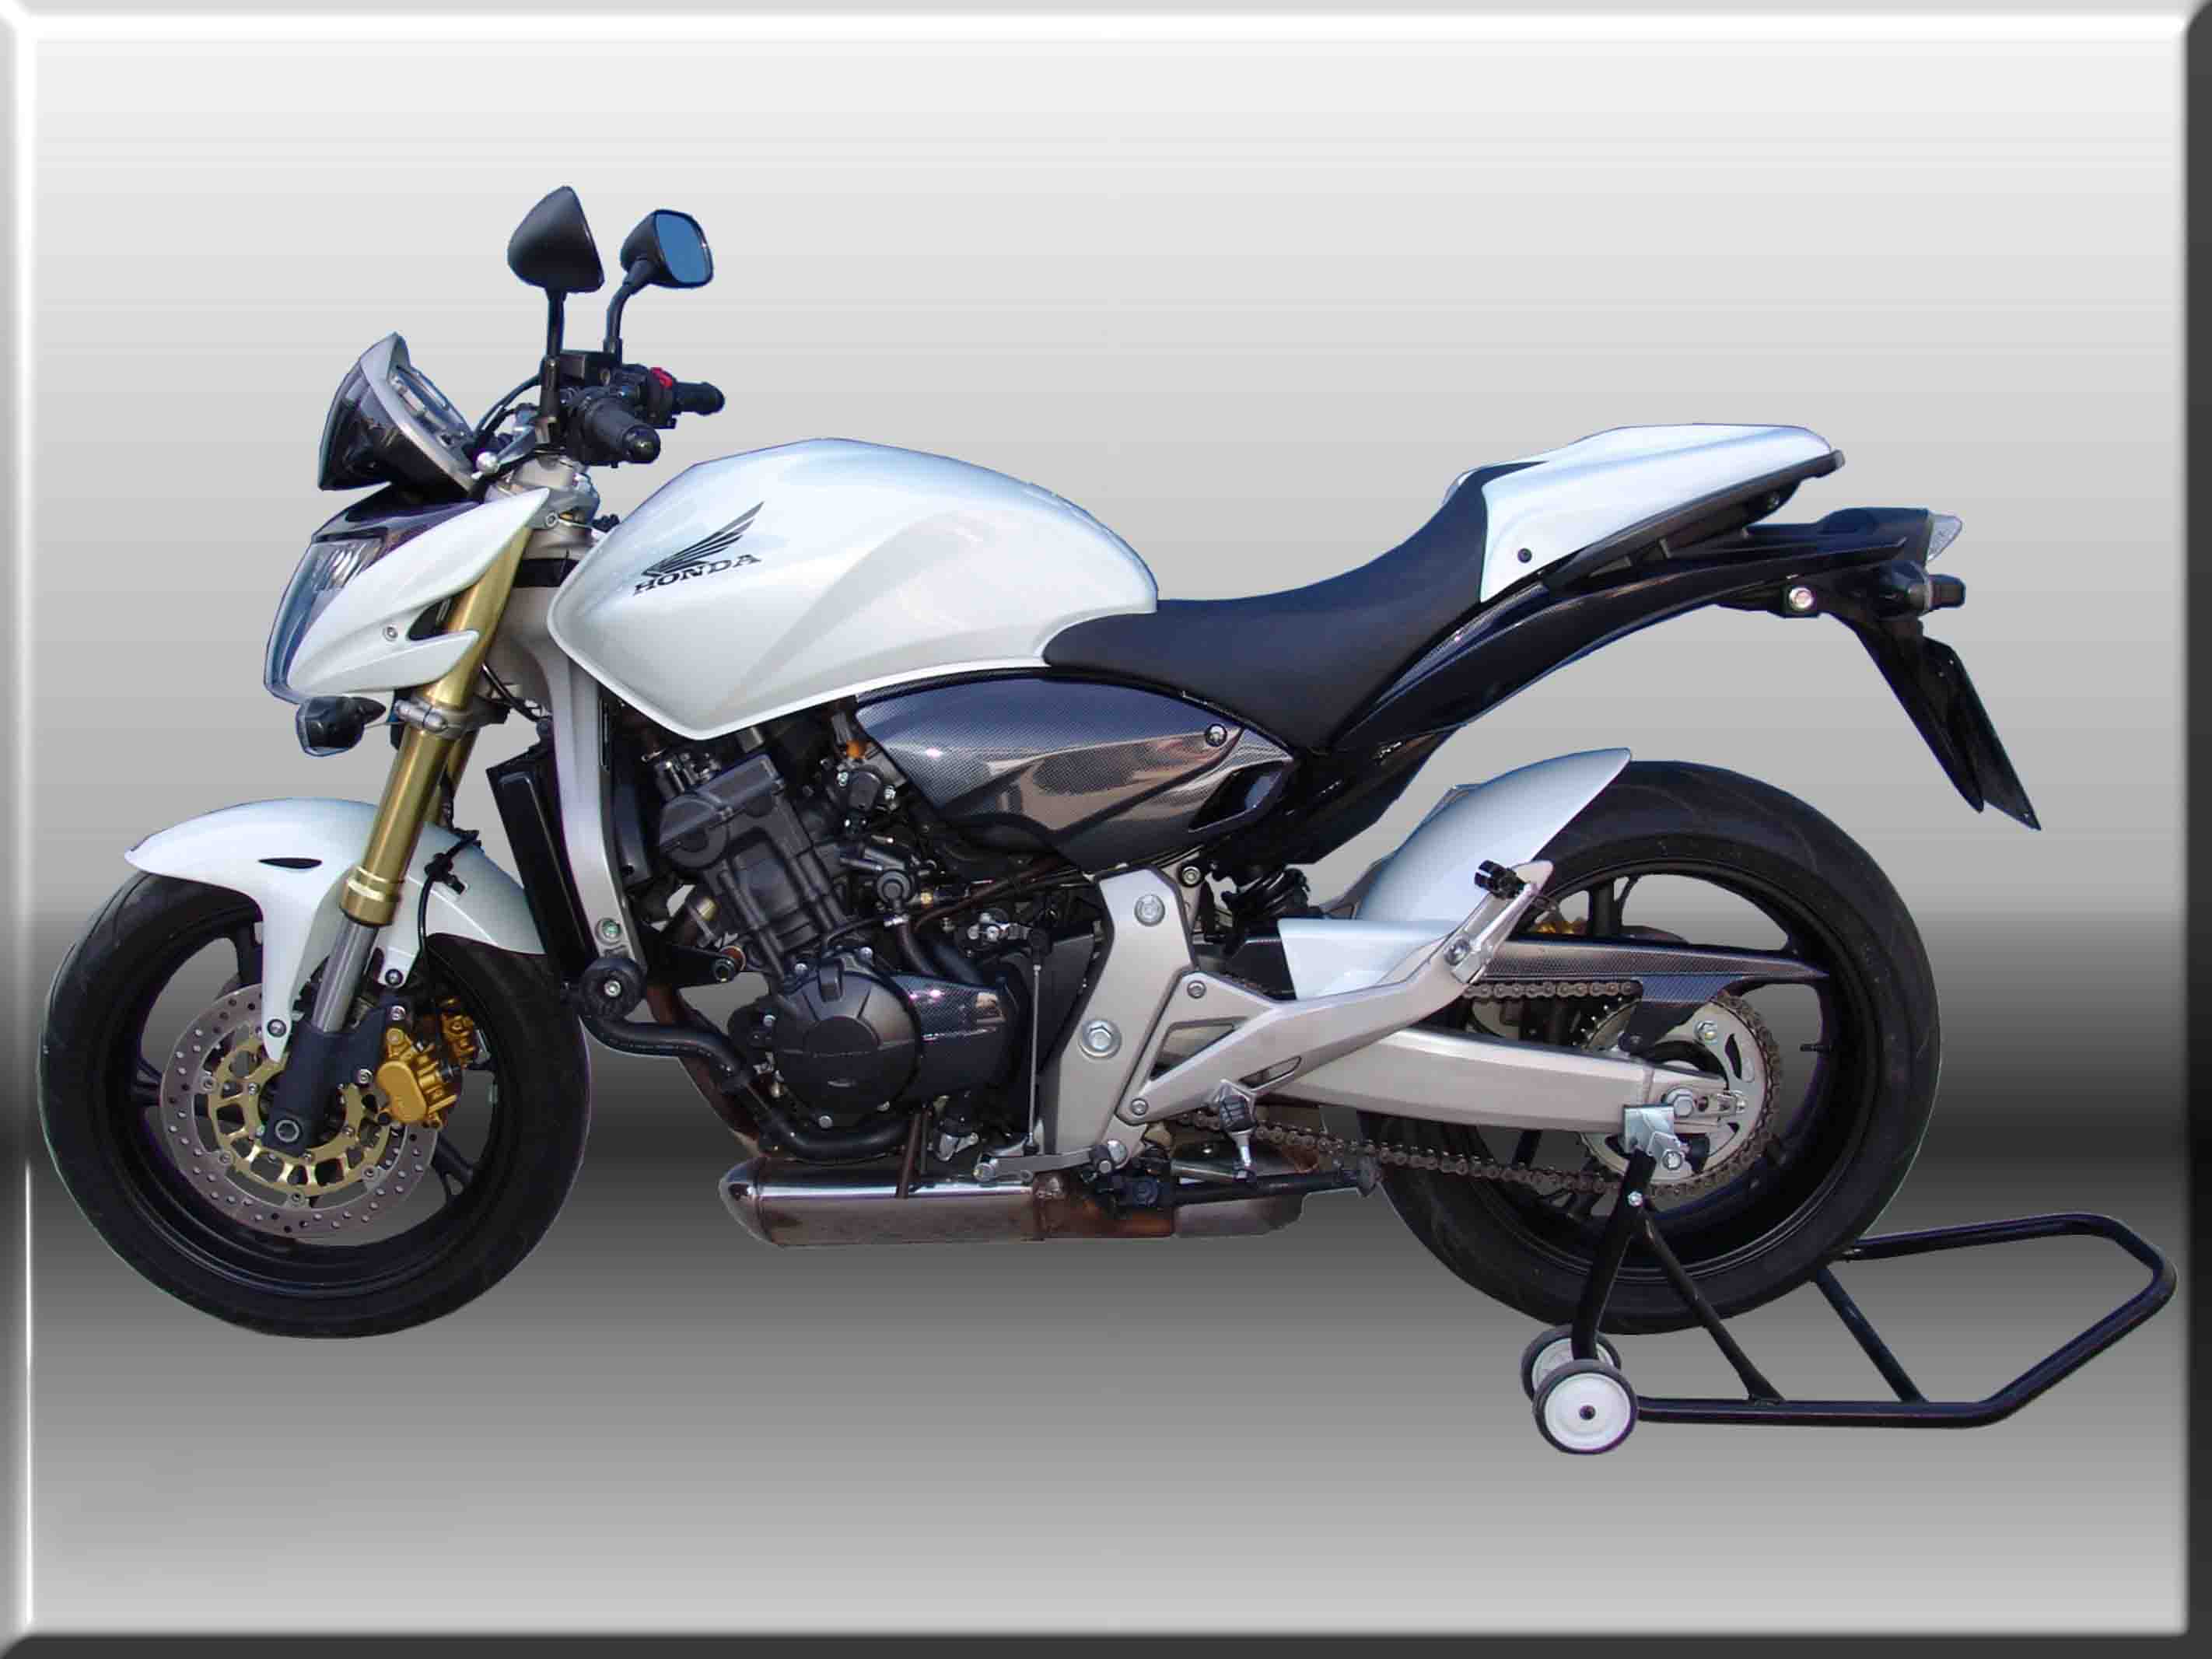 Мотоцикл honda hornet 250: полный обзор, технические характеристики, отзывы